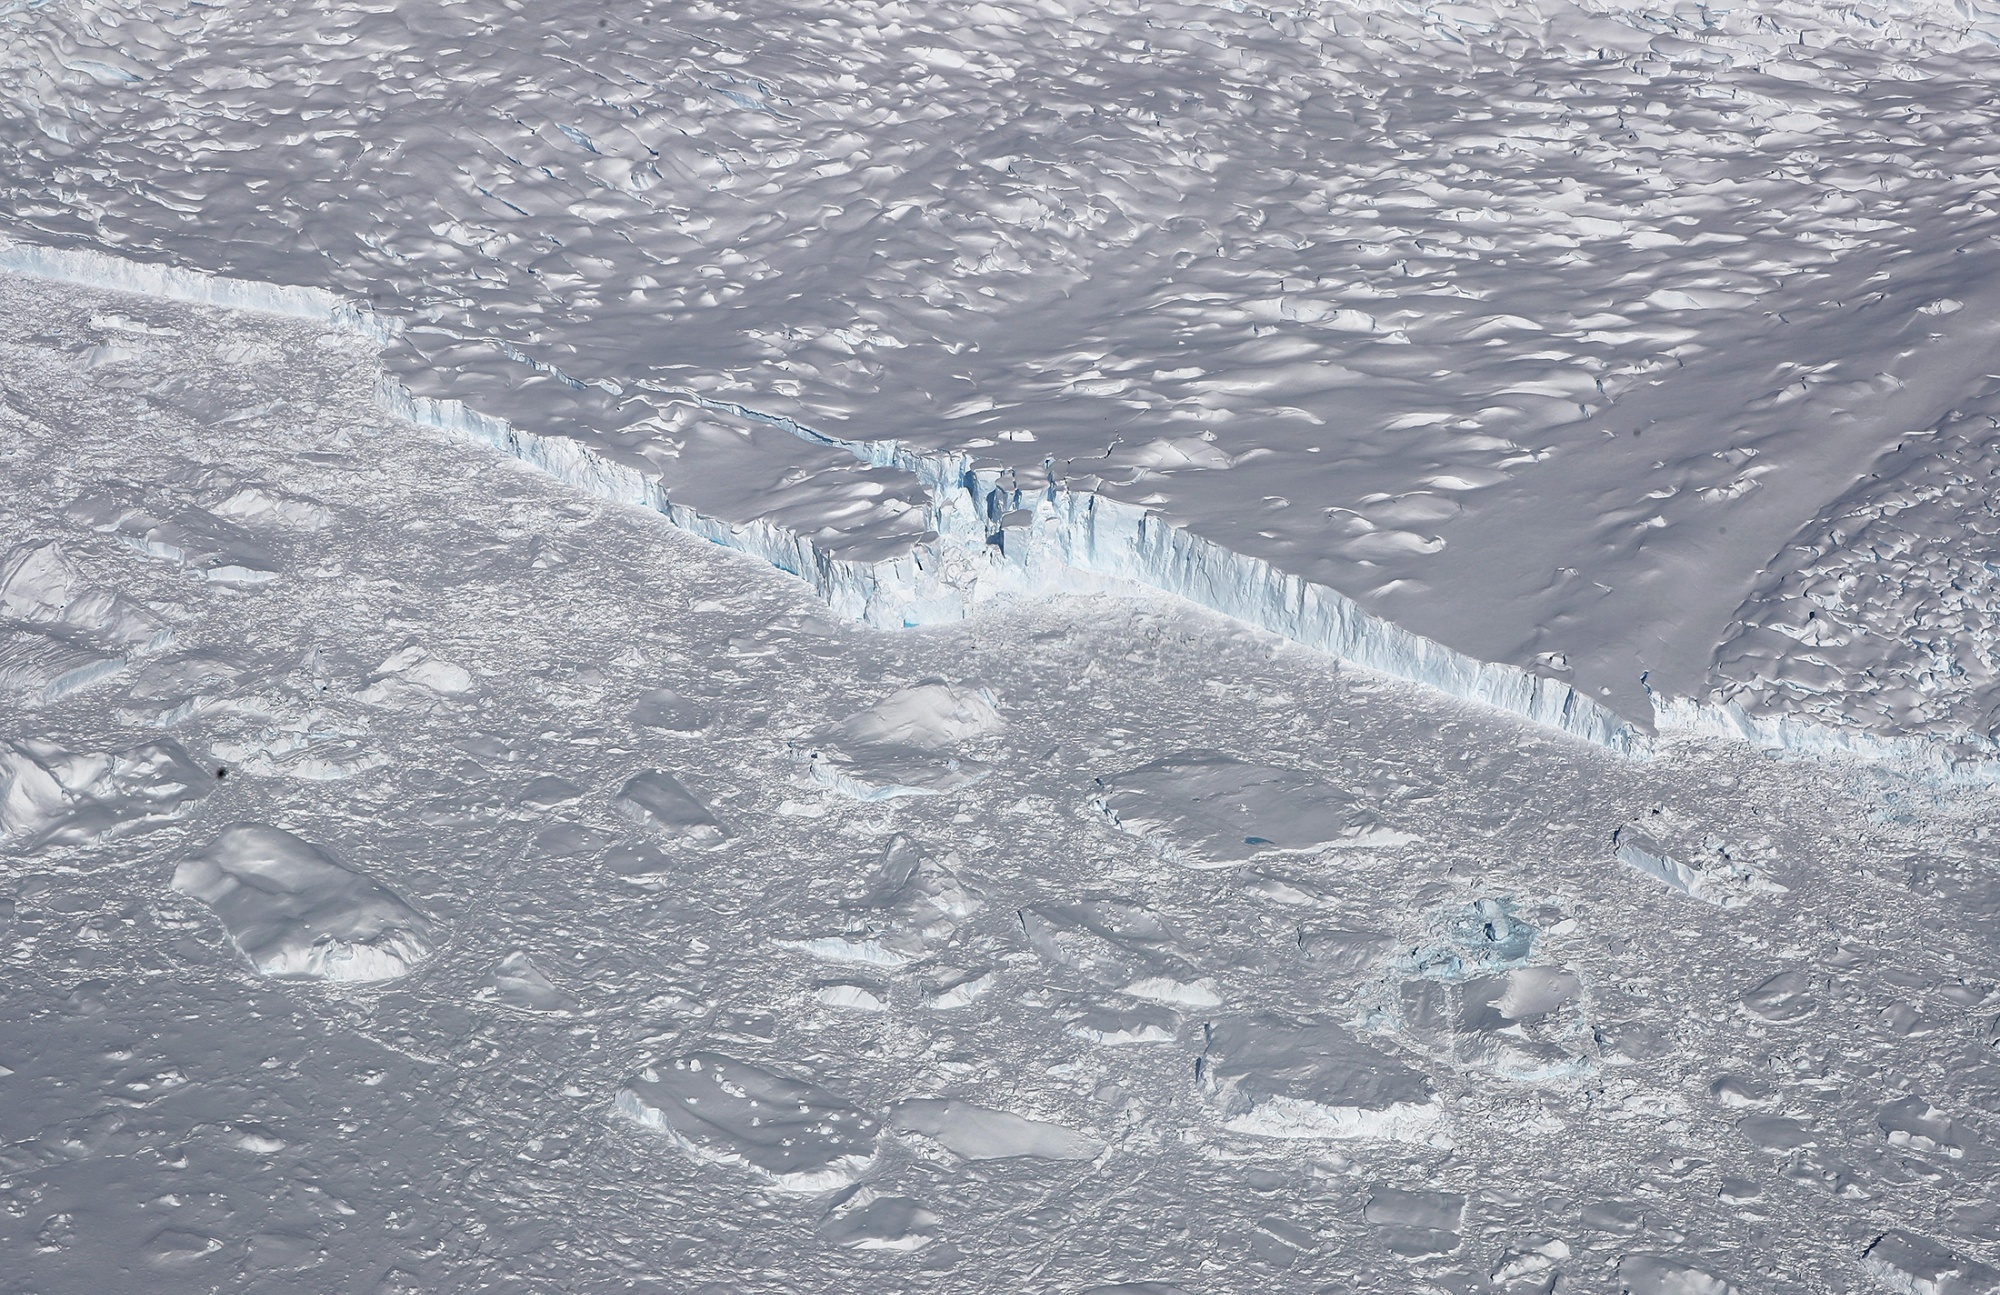 A calving glacier in the Antarctic Peninsula region&nbsp;in 2017.&nbsp;